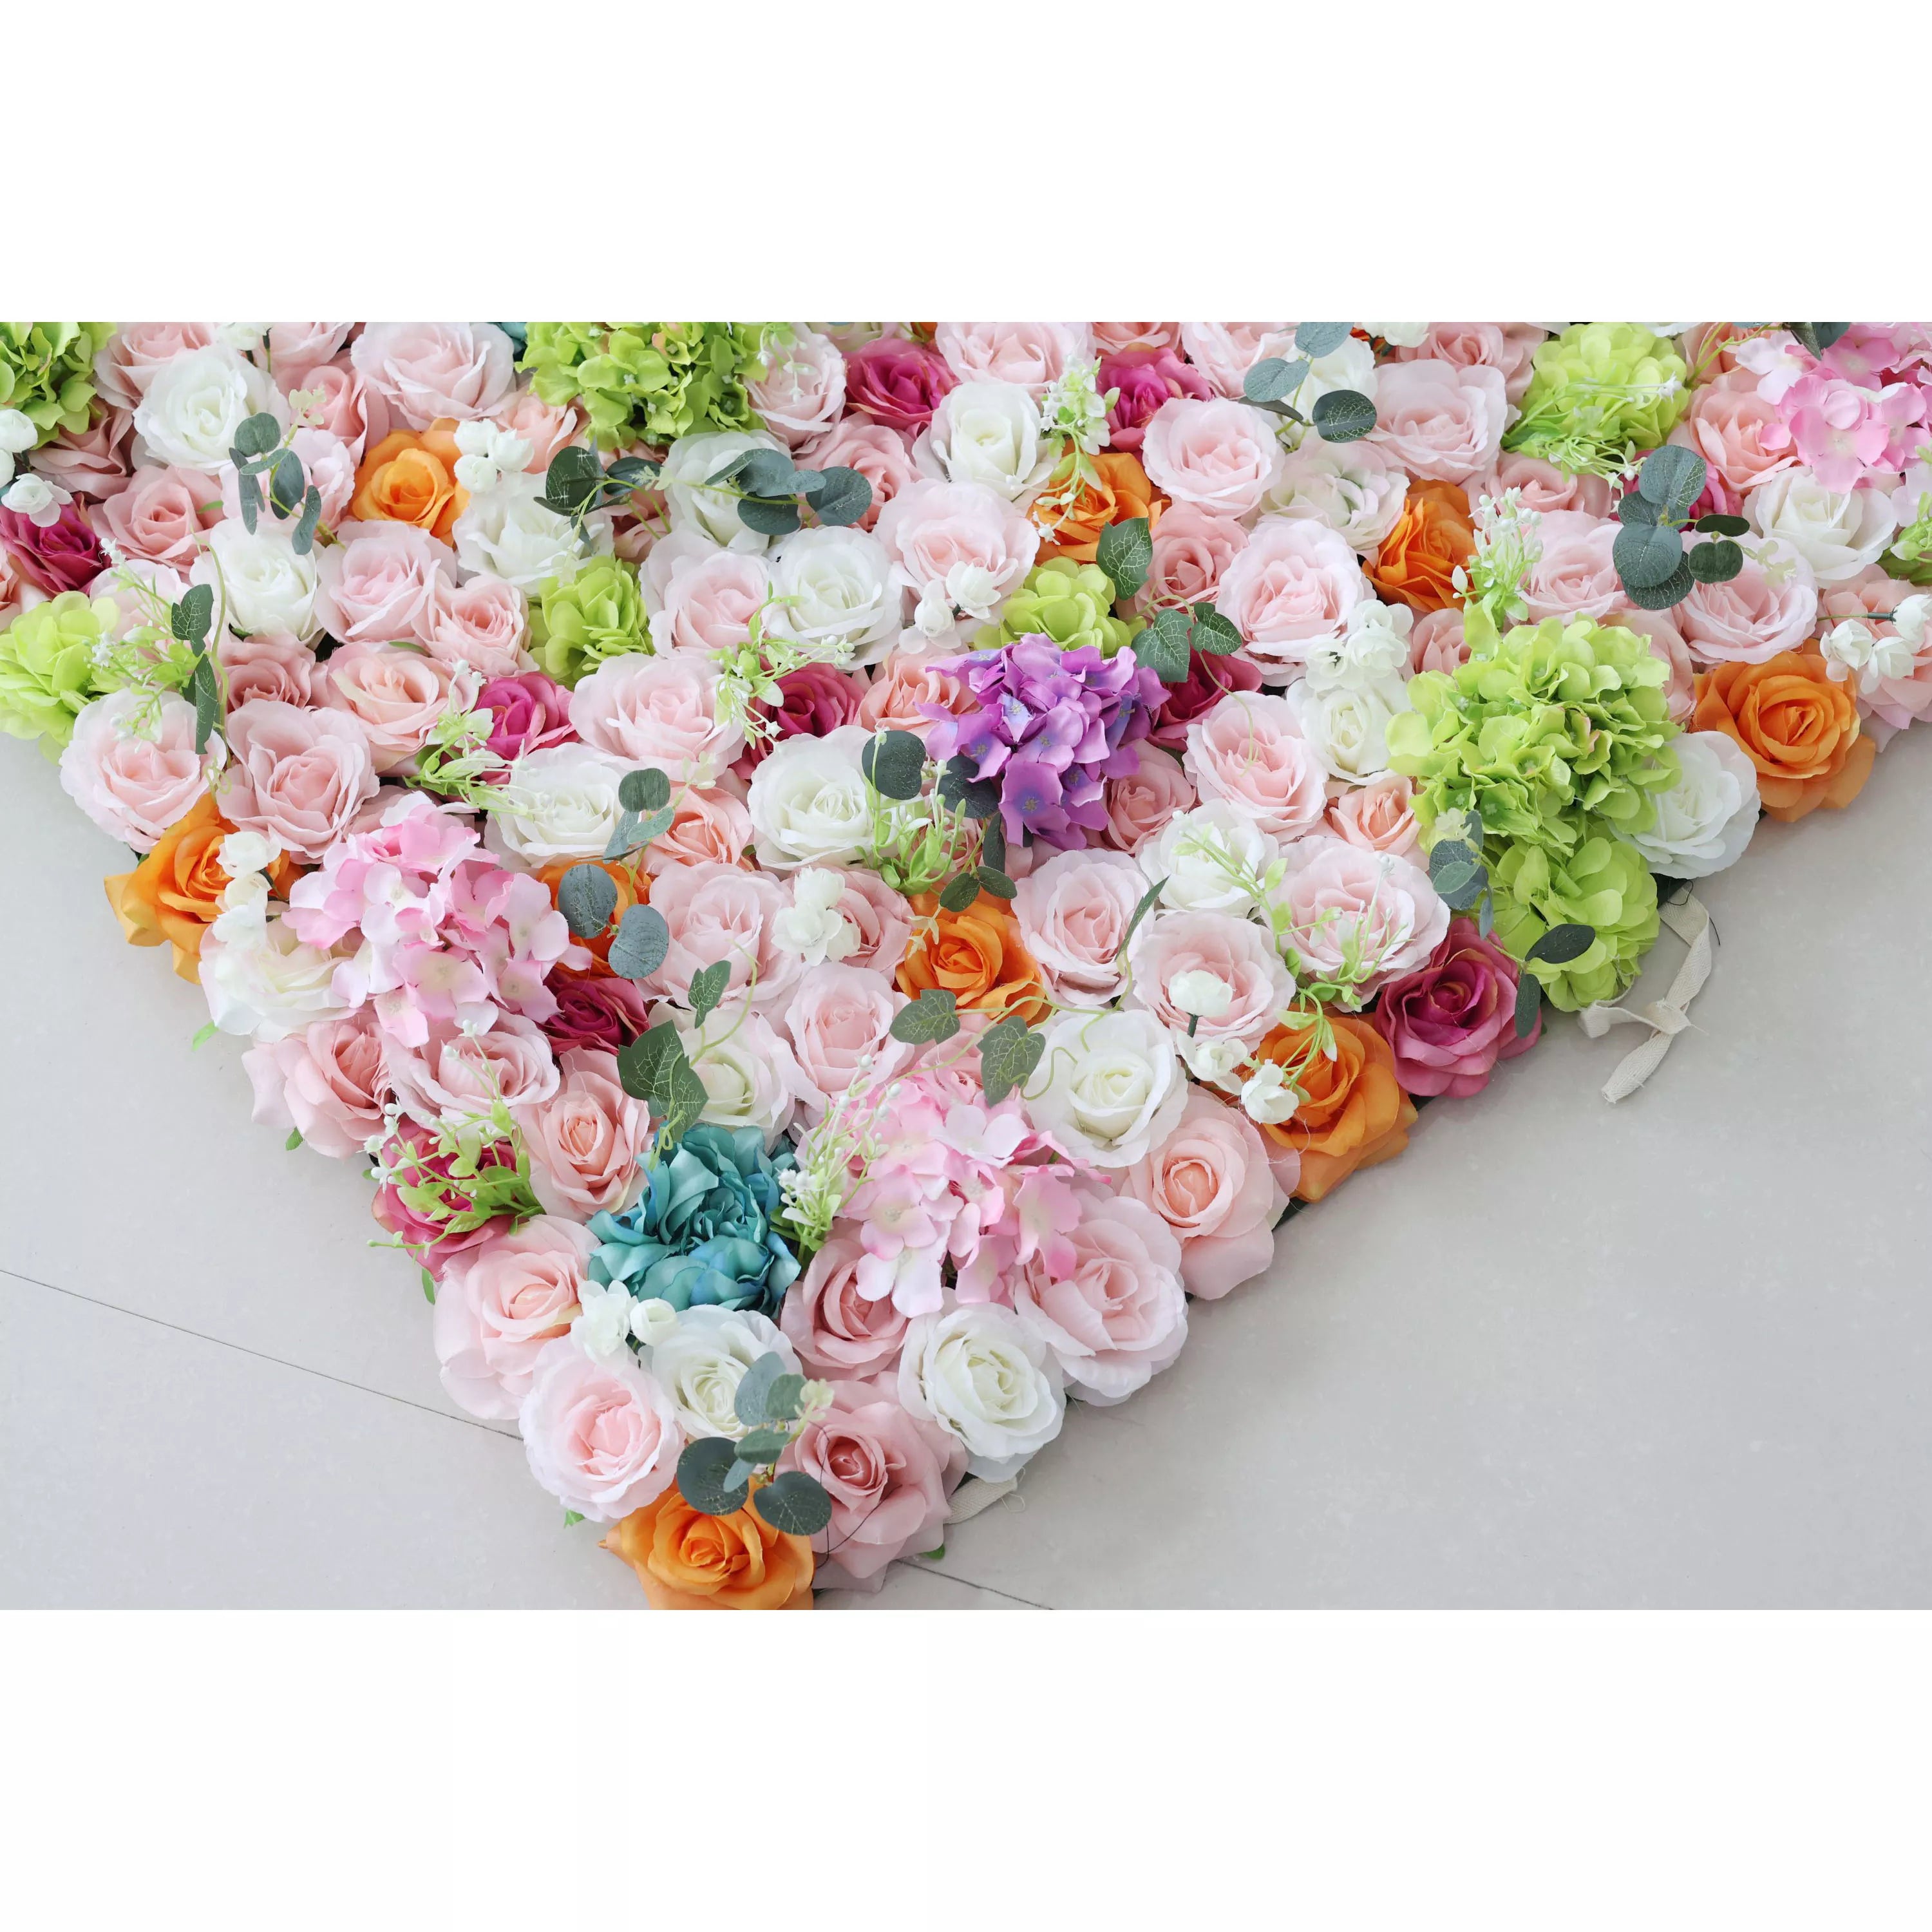 ValarFlower Toile de fond murale florale artificielle : Gala du jardin enchanté – Une danse éblouissante de teintes délicates et de fleurs vibrantes.-VF-248